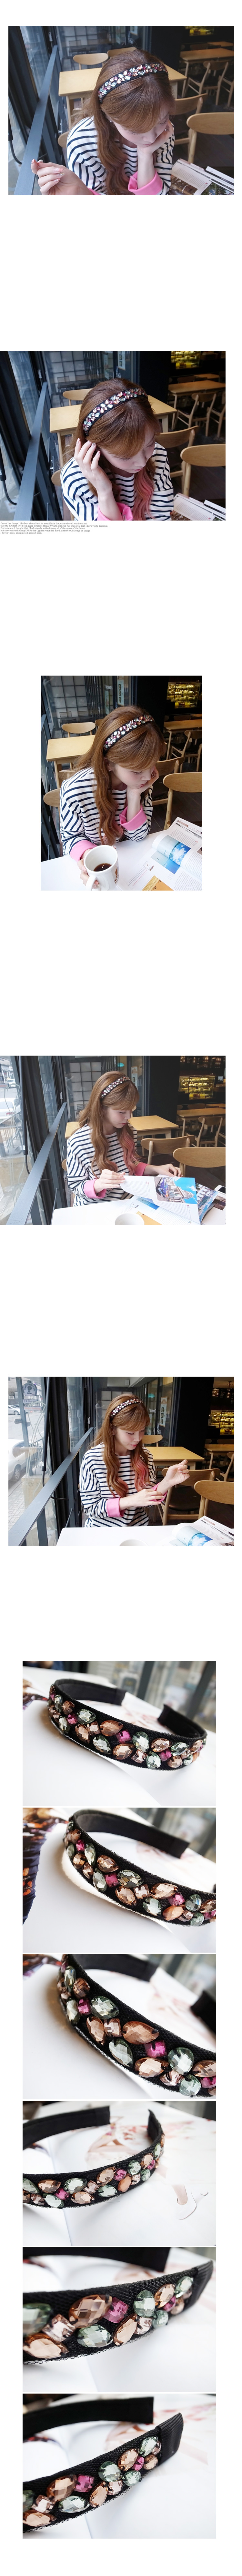 韓國 NaniWorld 七彩多寶石氛圍髮箍 #2188